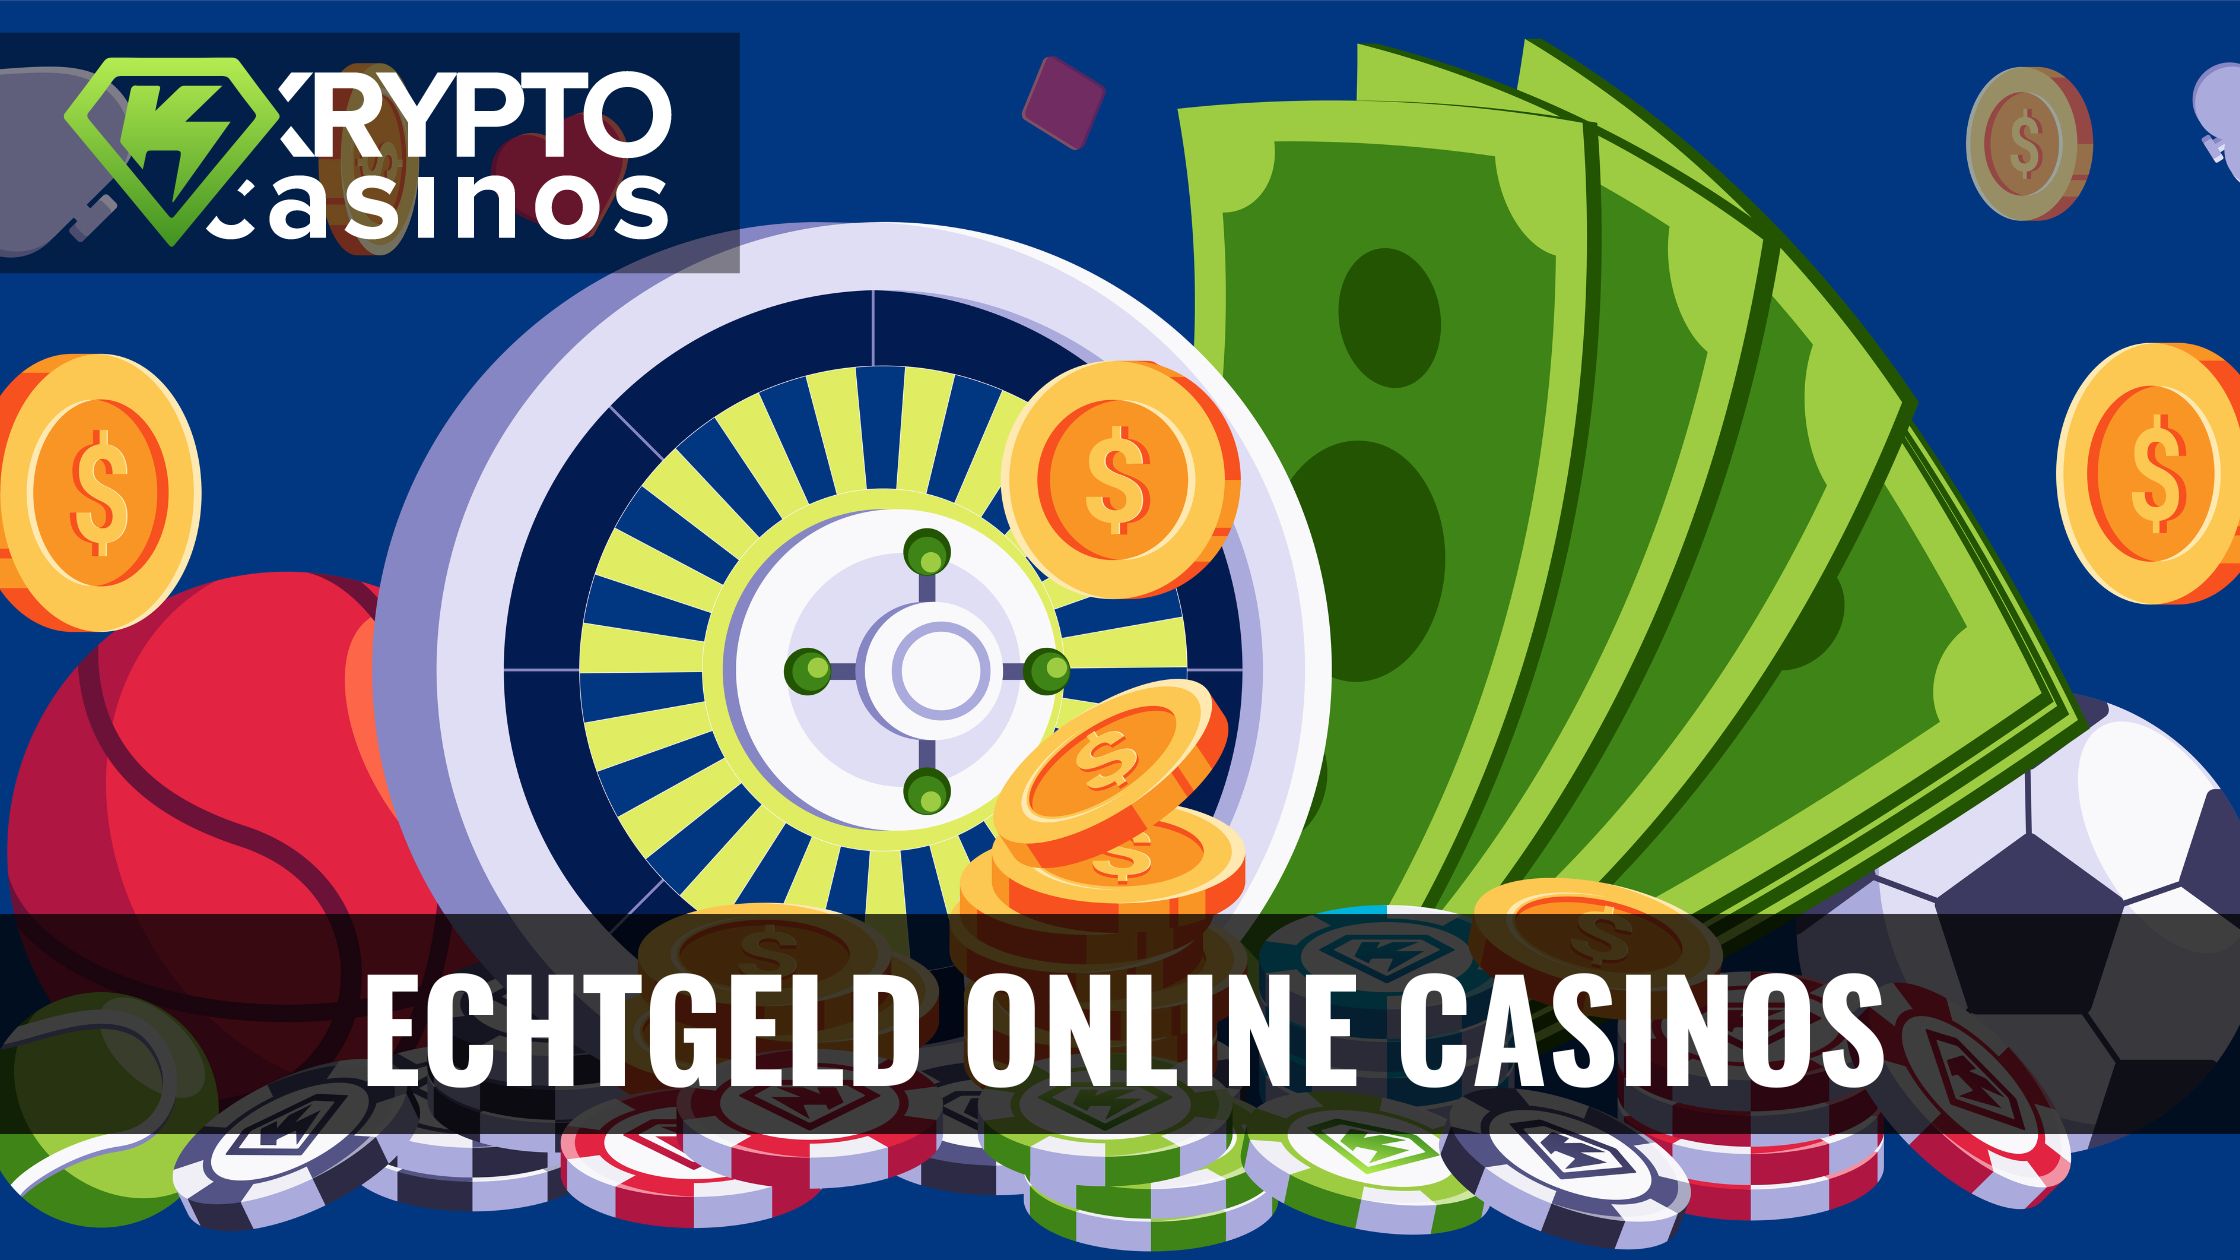 10 kreative Möglichkeiten, wie Sie Ihr Online Casino Echtes Geld verbessern können